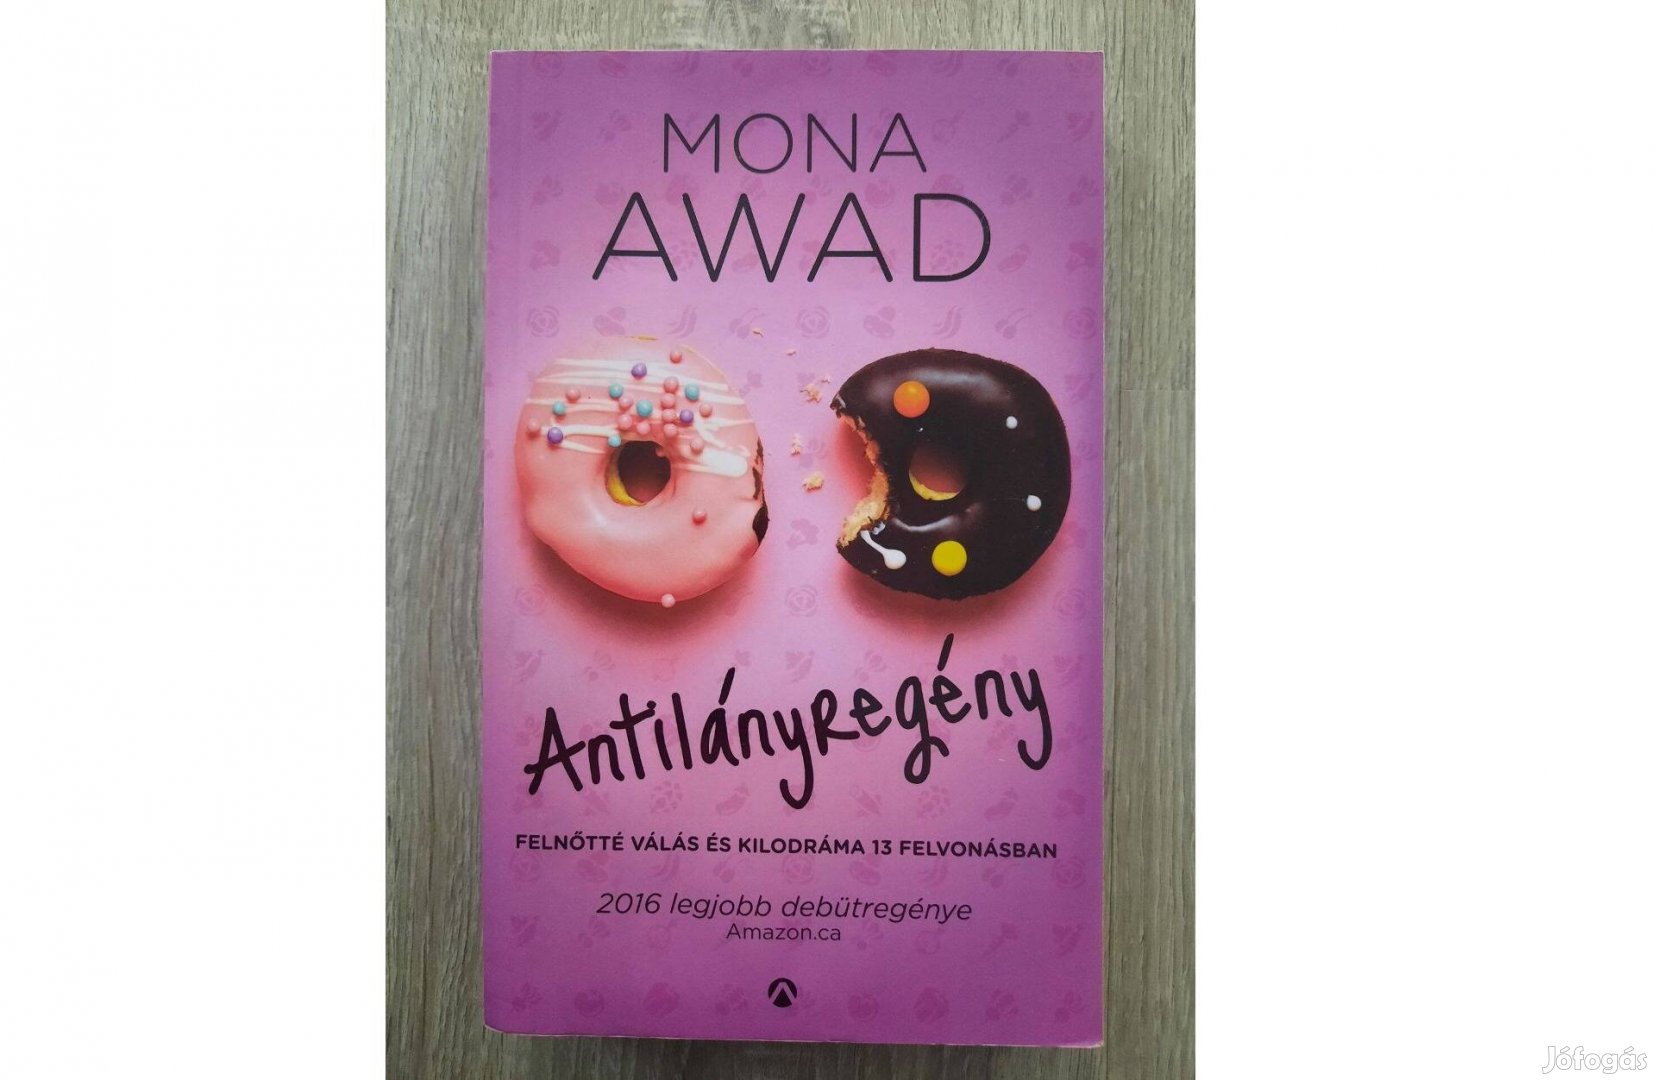 Mona Awad: Antilányregény